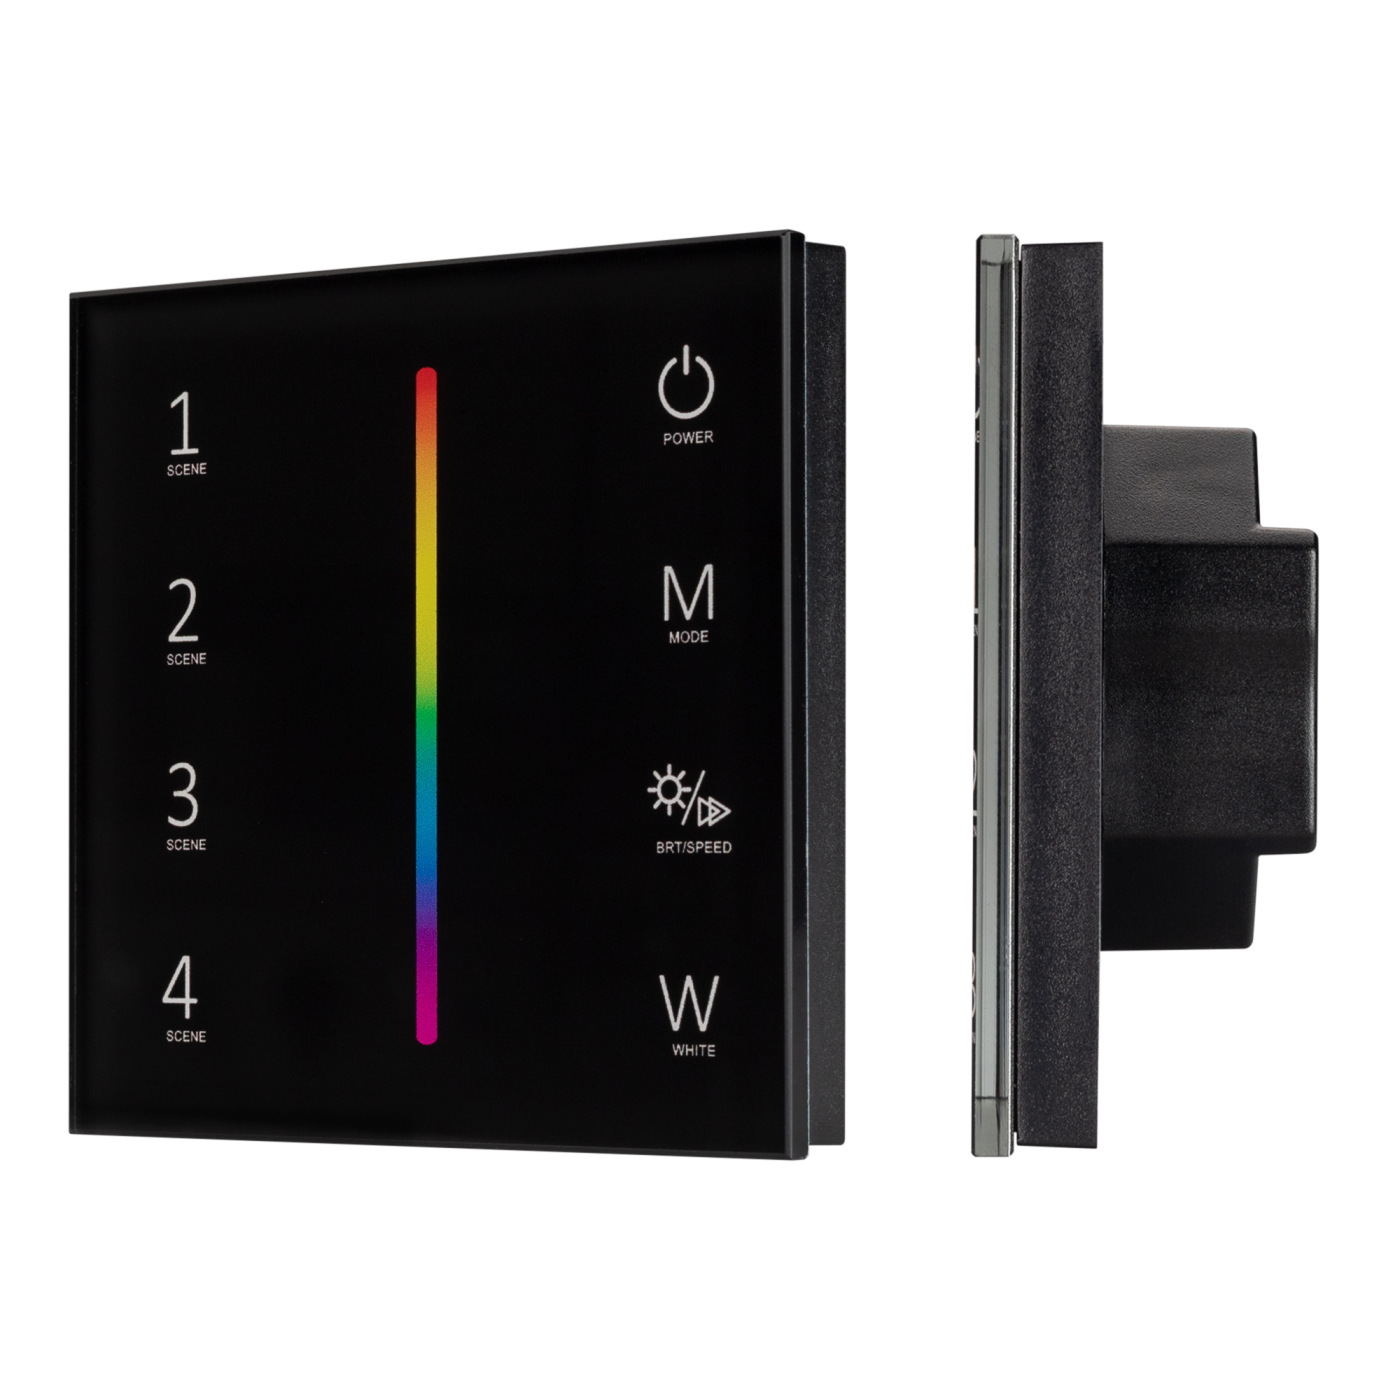 Панель SMART-P22-RGBW-G-IN Black (12-24V, 4x3A, Sens, 2.4G) (Arlight, IP20 Пластик, 5 лет) сетевые фильтры isol 8 connect slave iec 2x4 black